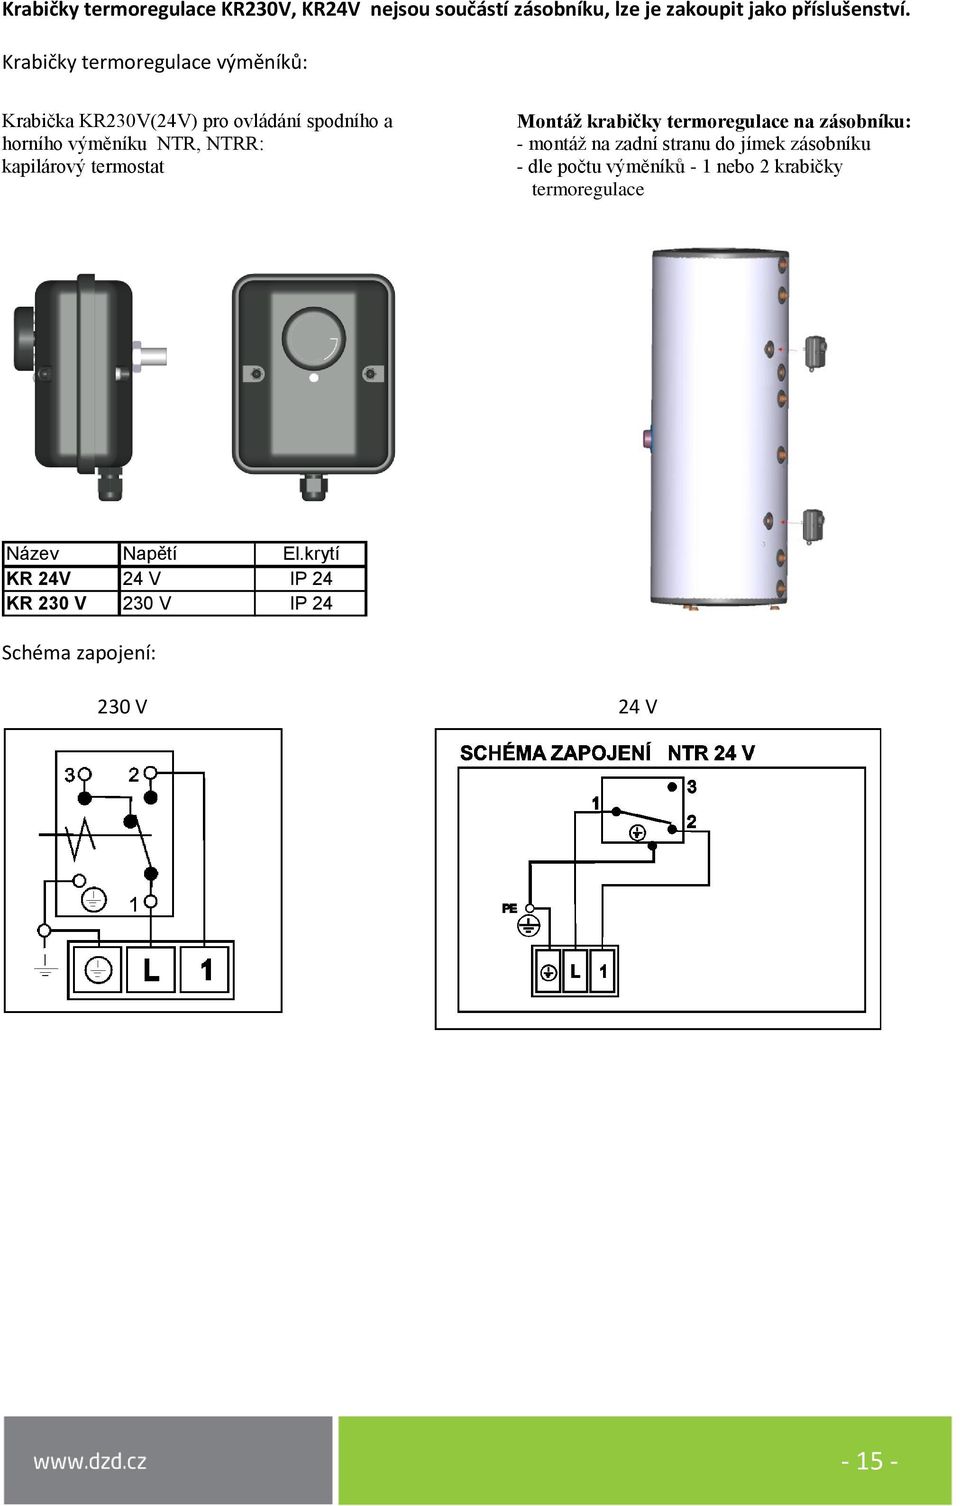 termostat Montáž krabičky termoregulace na zásobníku: - montáž na zadní stranu do jímek zásobníku - dle počtu